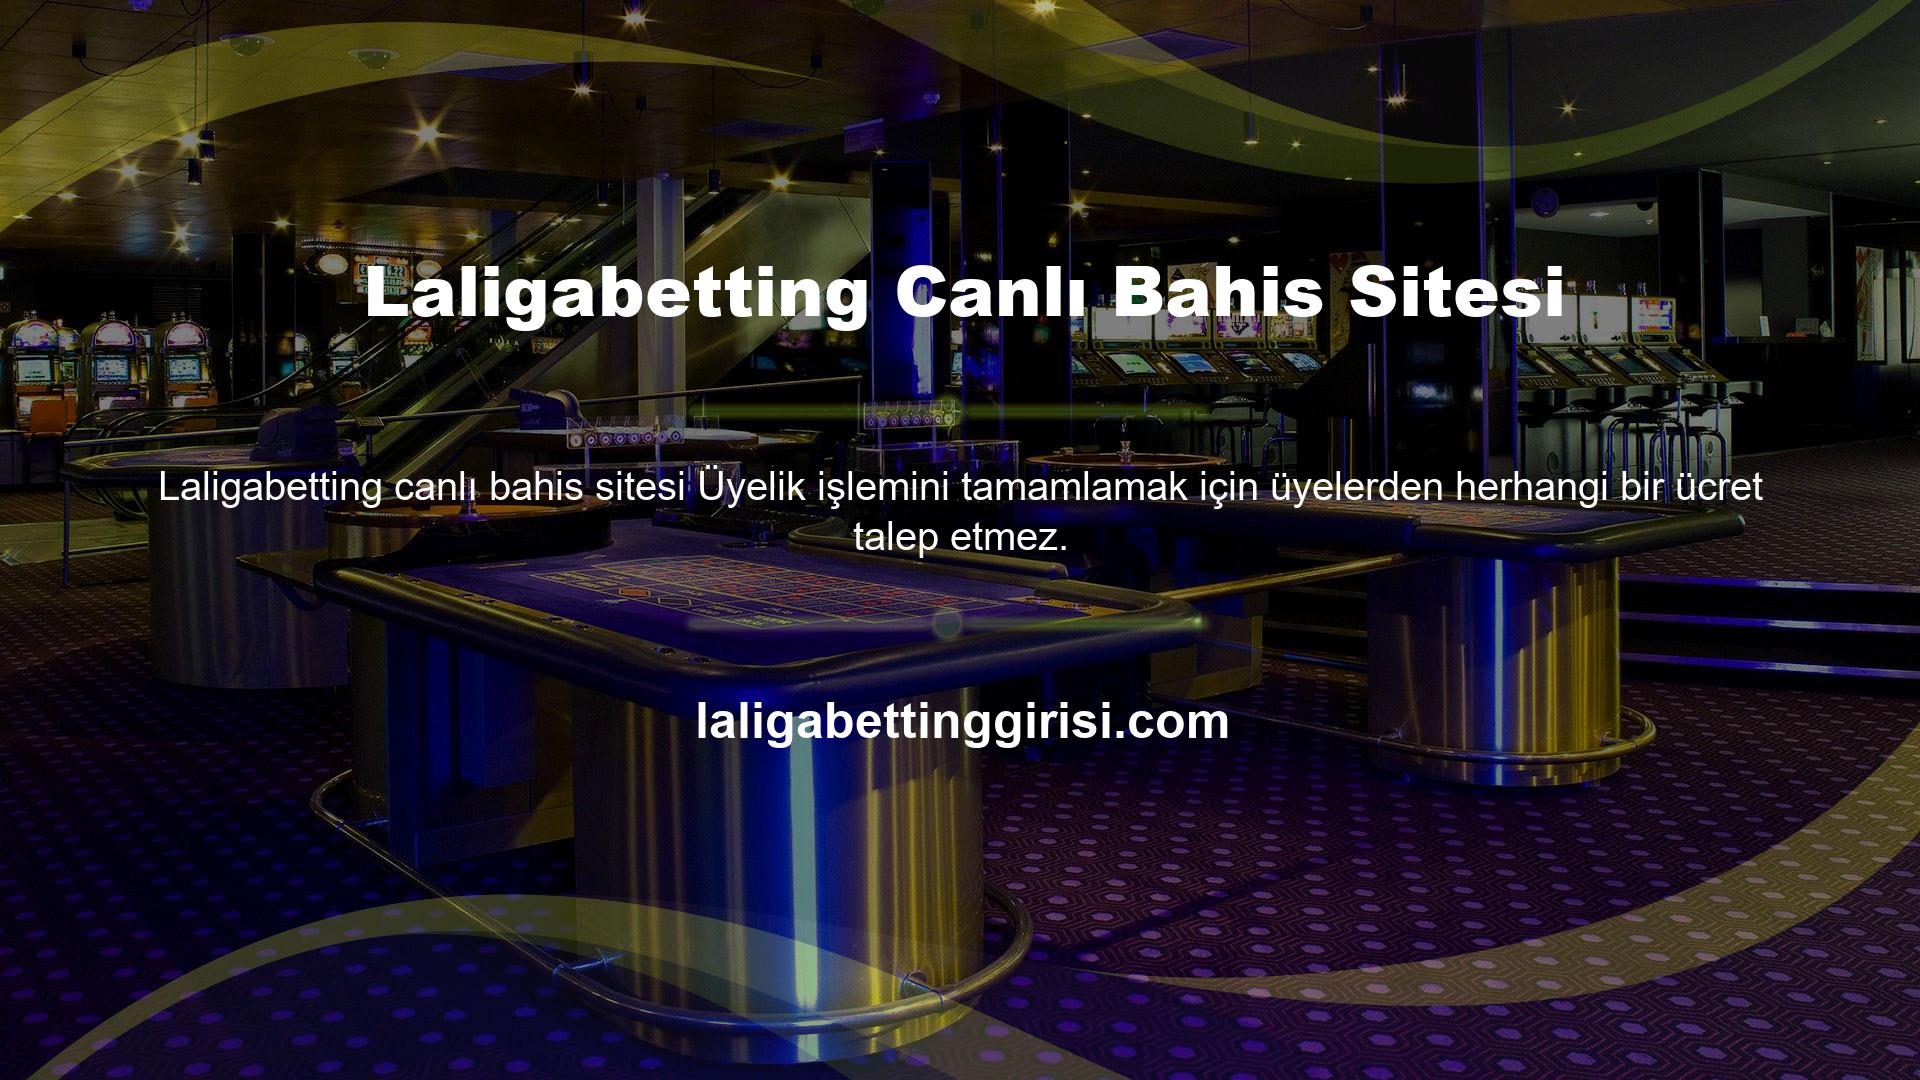 Laligabetting Bahis bölümünde bahis, canlı bahis, canlı bahis, casino, casino, poker, sanal bahis ve canlı bingo için bölümler bulunmaktadır